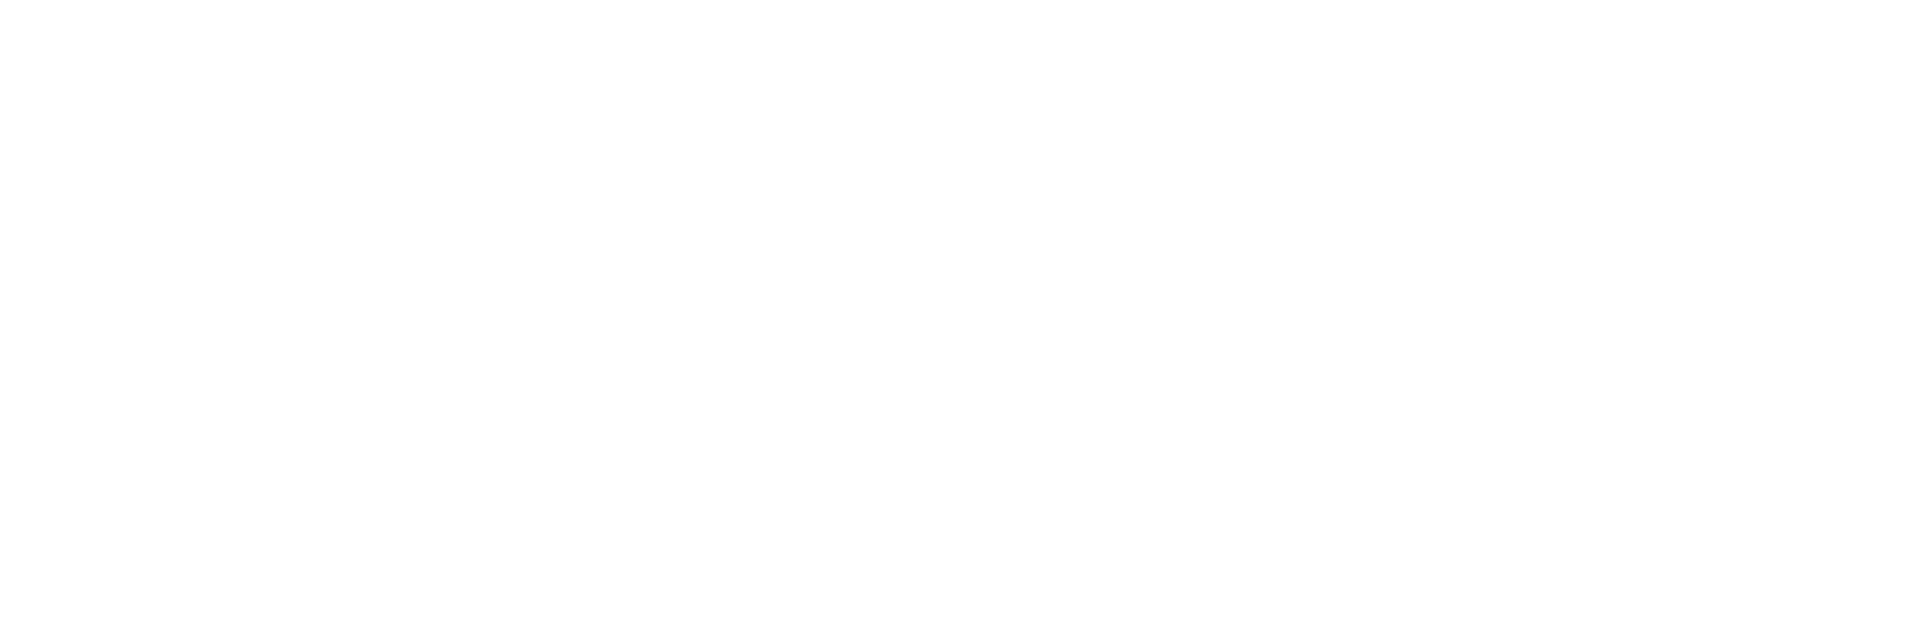 STARK Logo